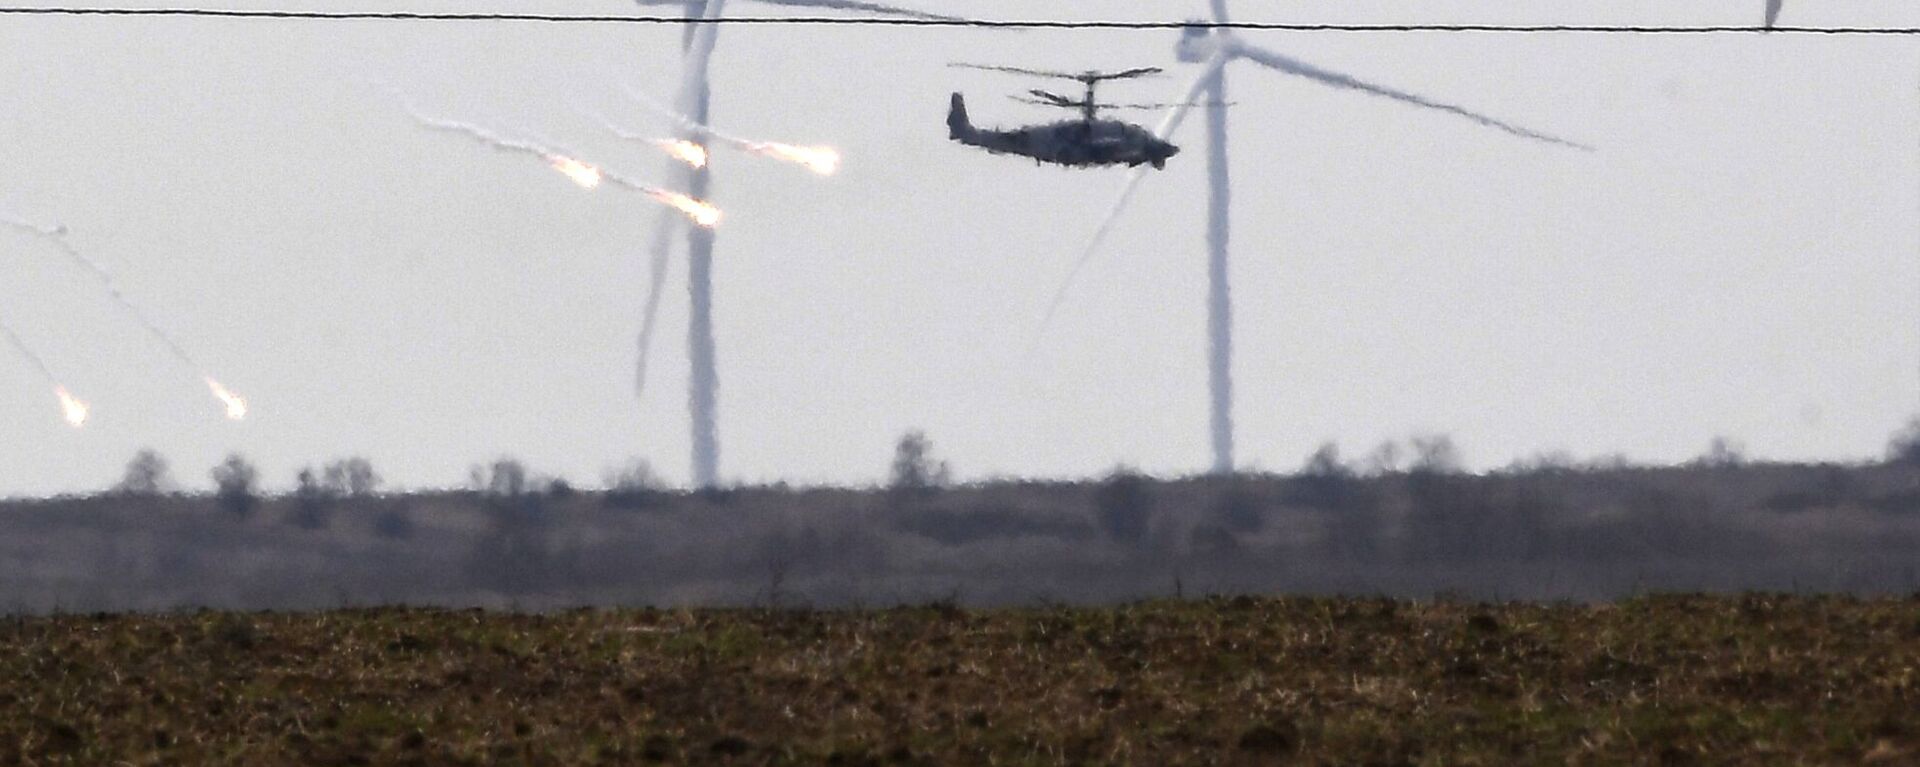 مروحيات هجومية من طراز مي-24 تابعة للقوات الجوية الروسية تحلق في سماء أرمينيا 28 فبراير 2022 - سبوتنيك عربي, 1920, 13.09.2022